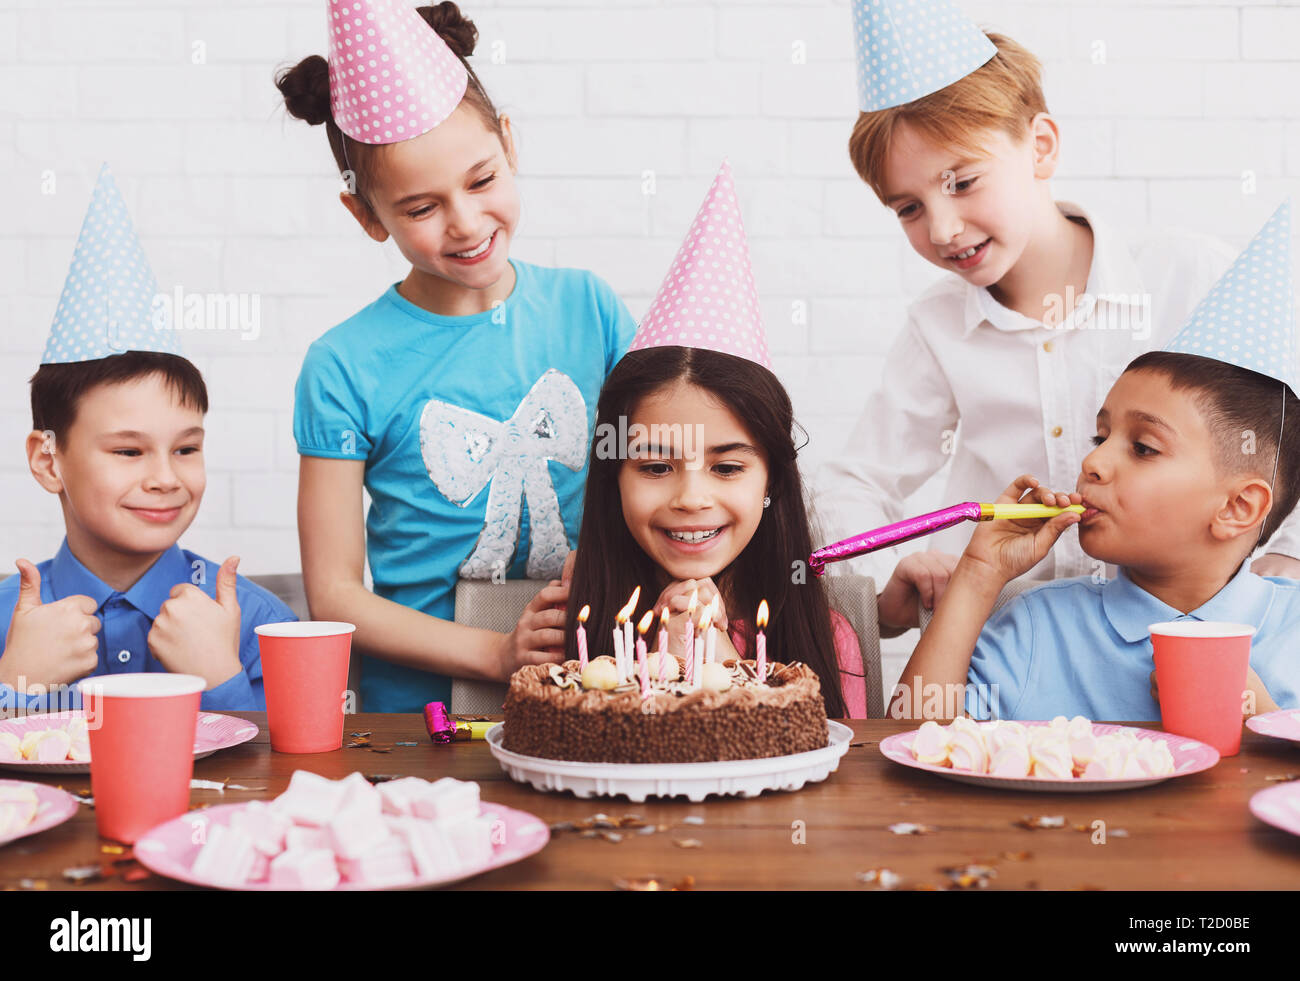 Geburtstag. Mädchen machen möchten und auf der Suche nach Kuchen, Feiern mit Freunden zu Hause. Stockfoto